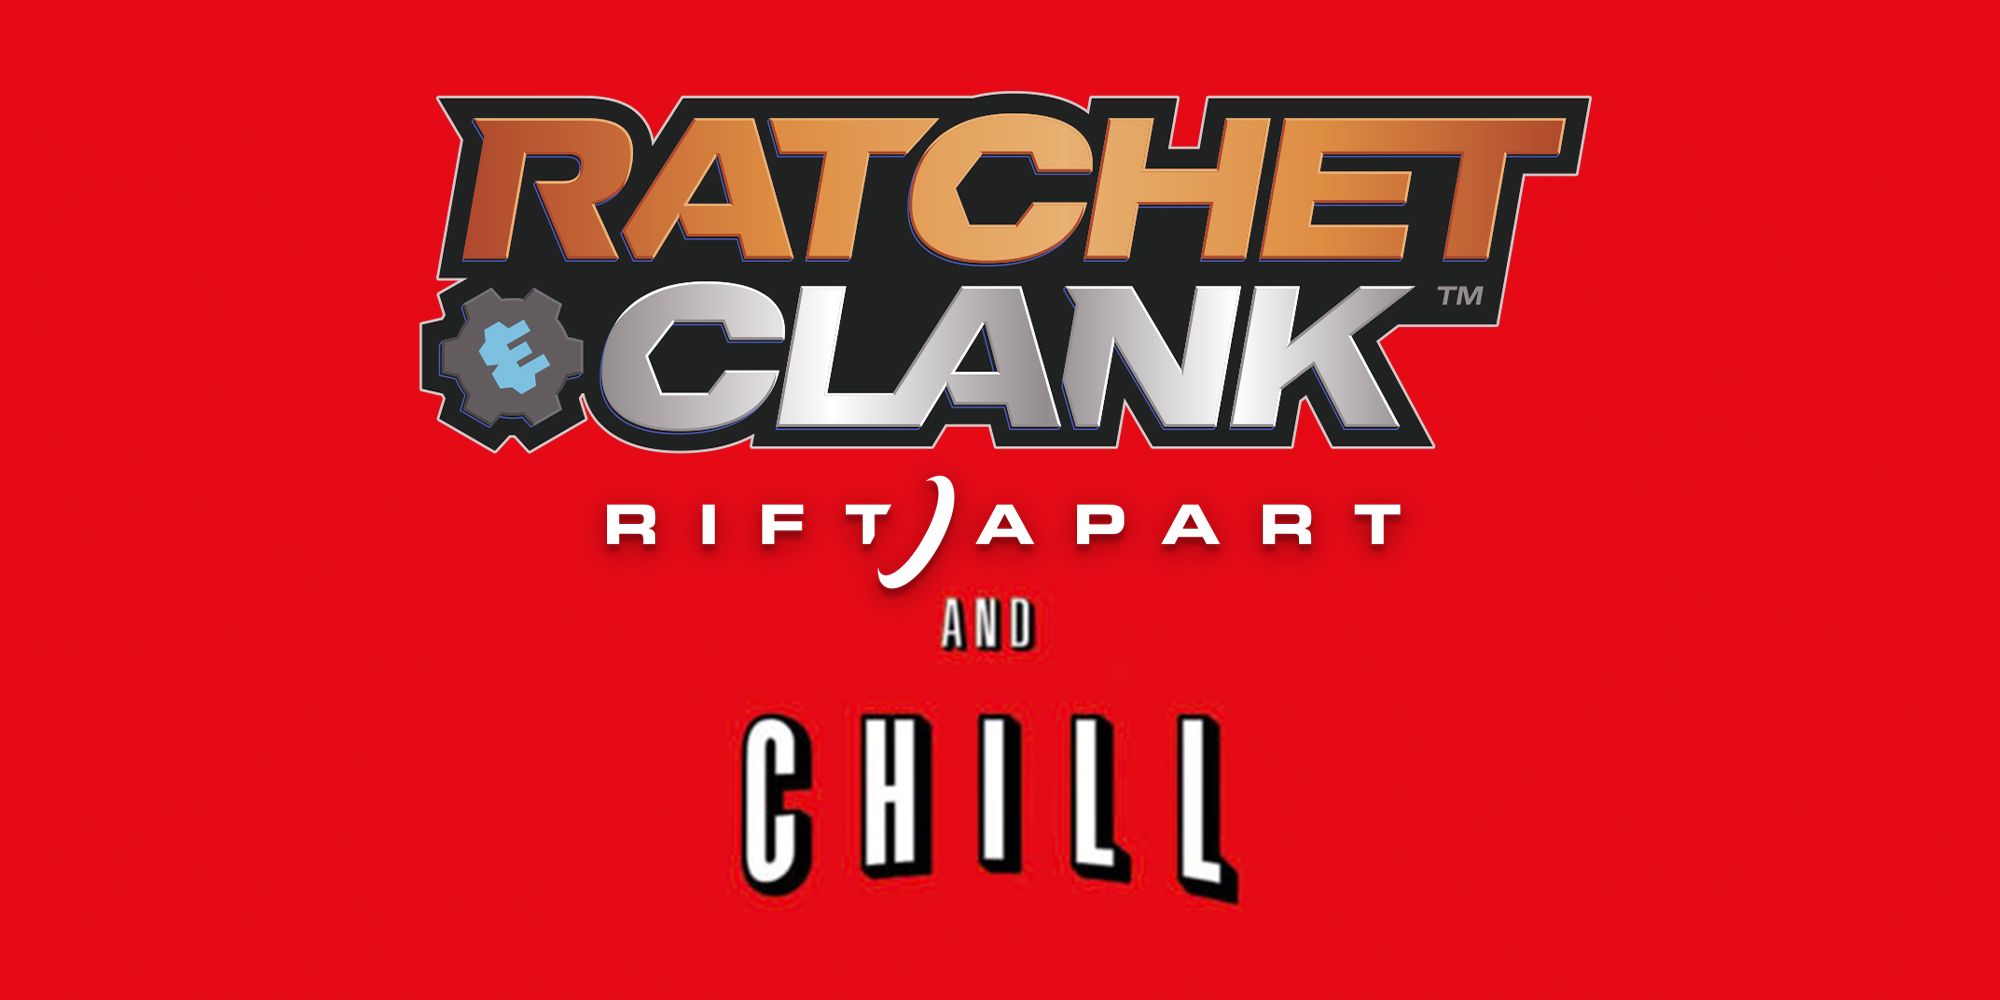 Ratchet & Clank Rift Apart: Trophies - List